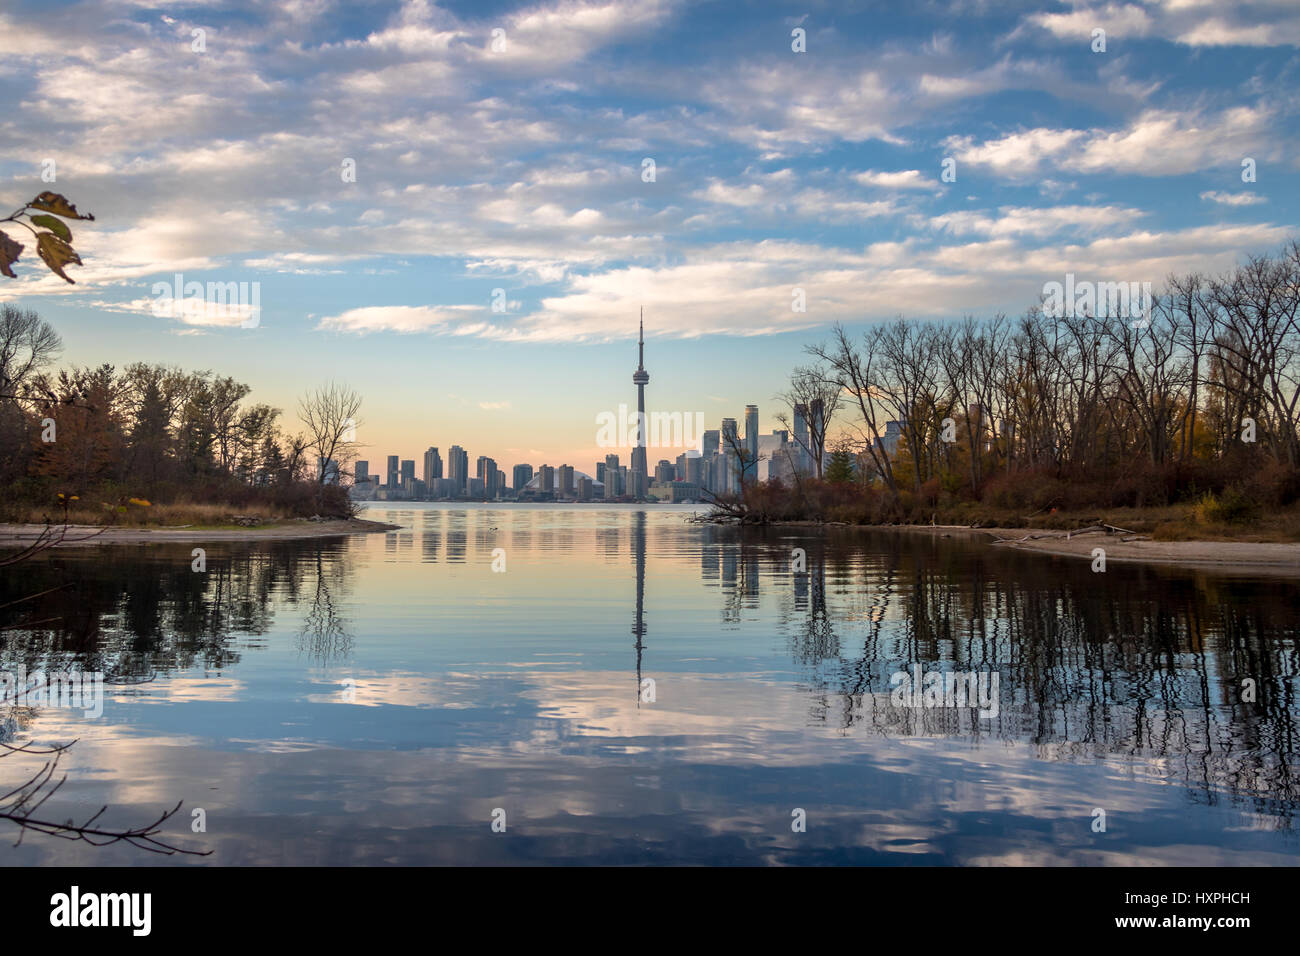 Toronto Skyline view from Toronto Islands - Toronto, Ontario, Canada Stock Photo